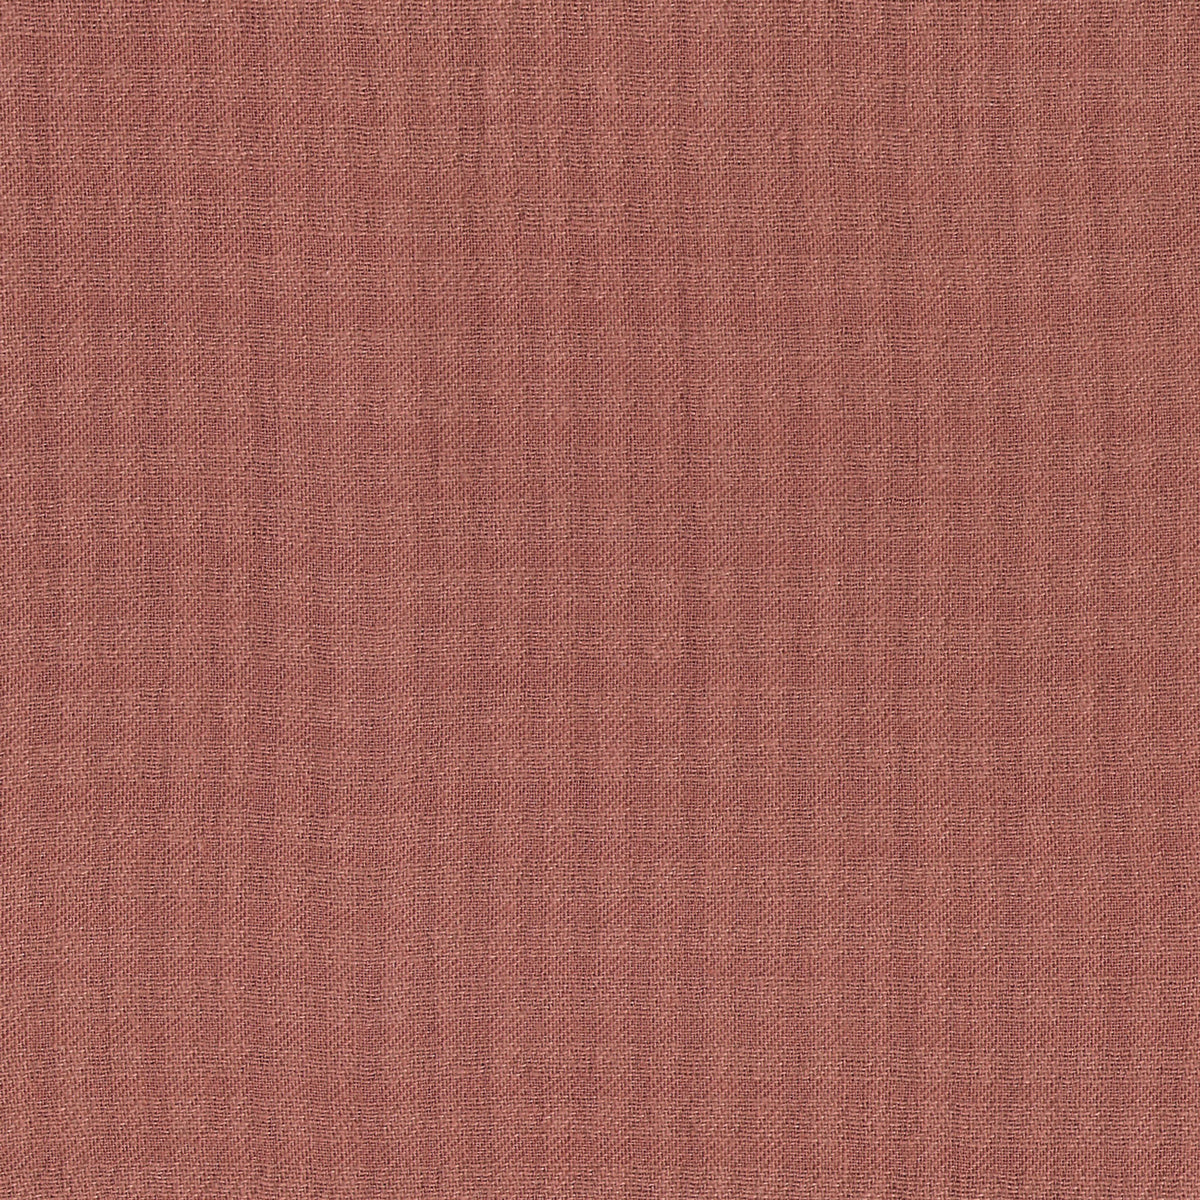 Détail du tissage à petits carreaux du tissu en coton La Maison Naïve coloris rose Sienne